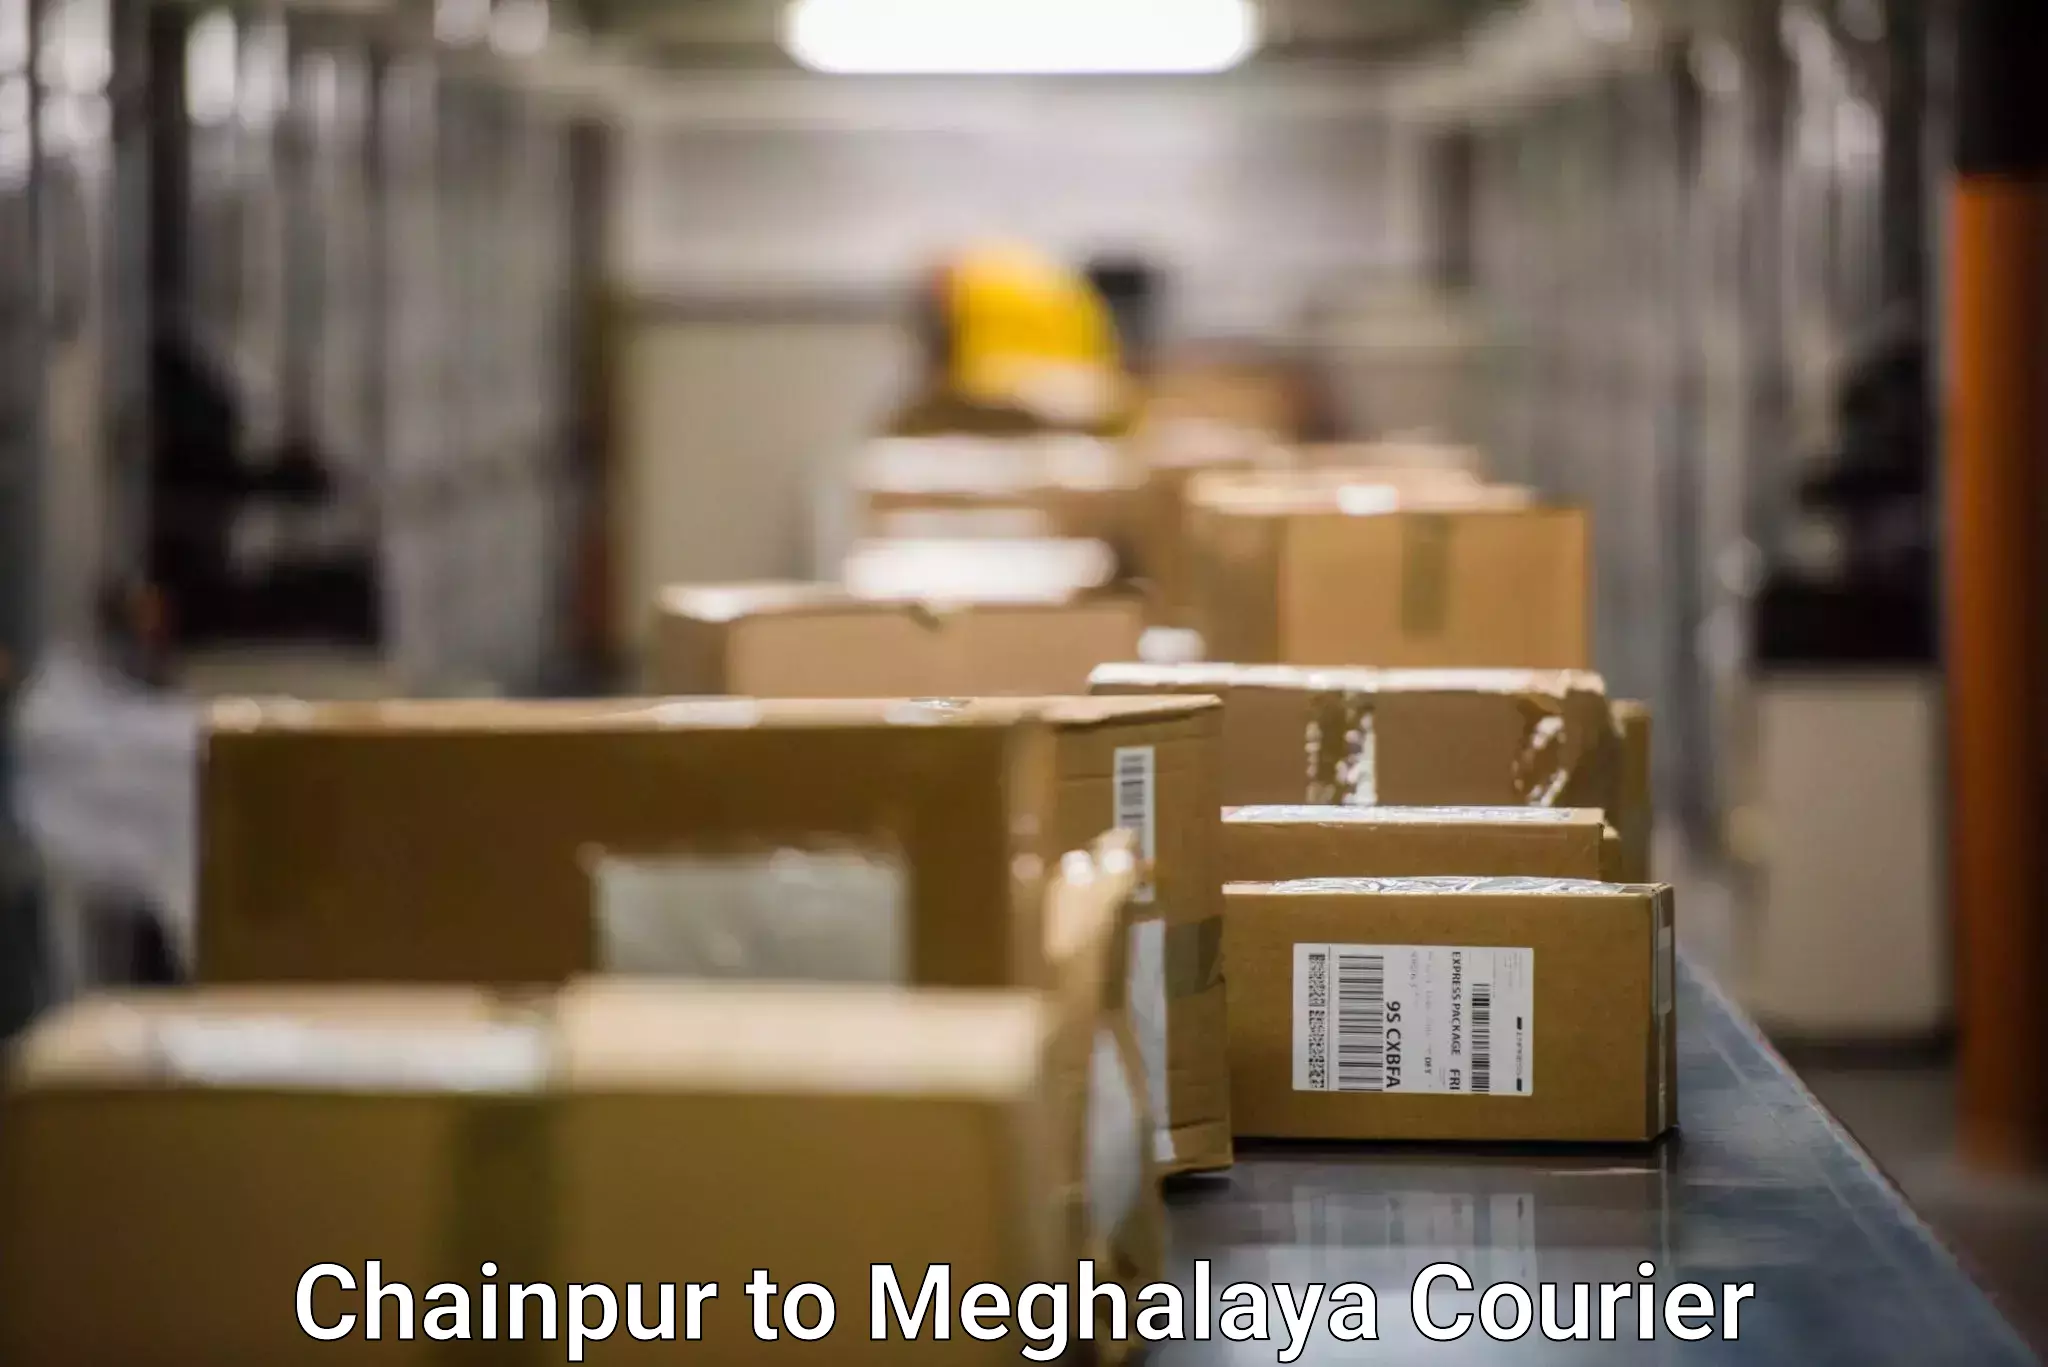 Speedy delivery service Chainpur to Williamnagar